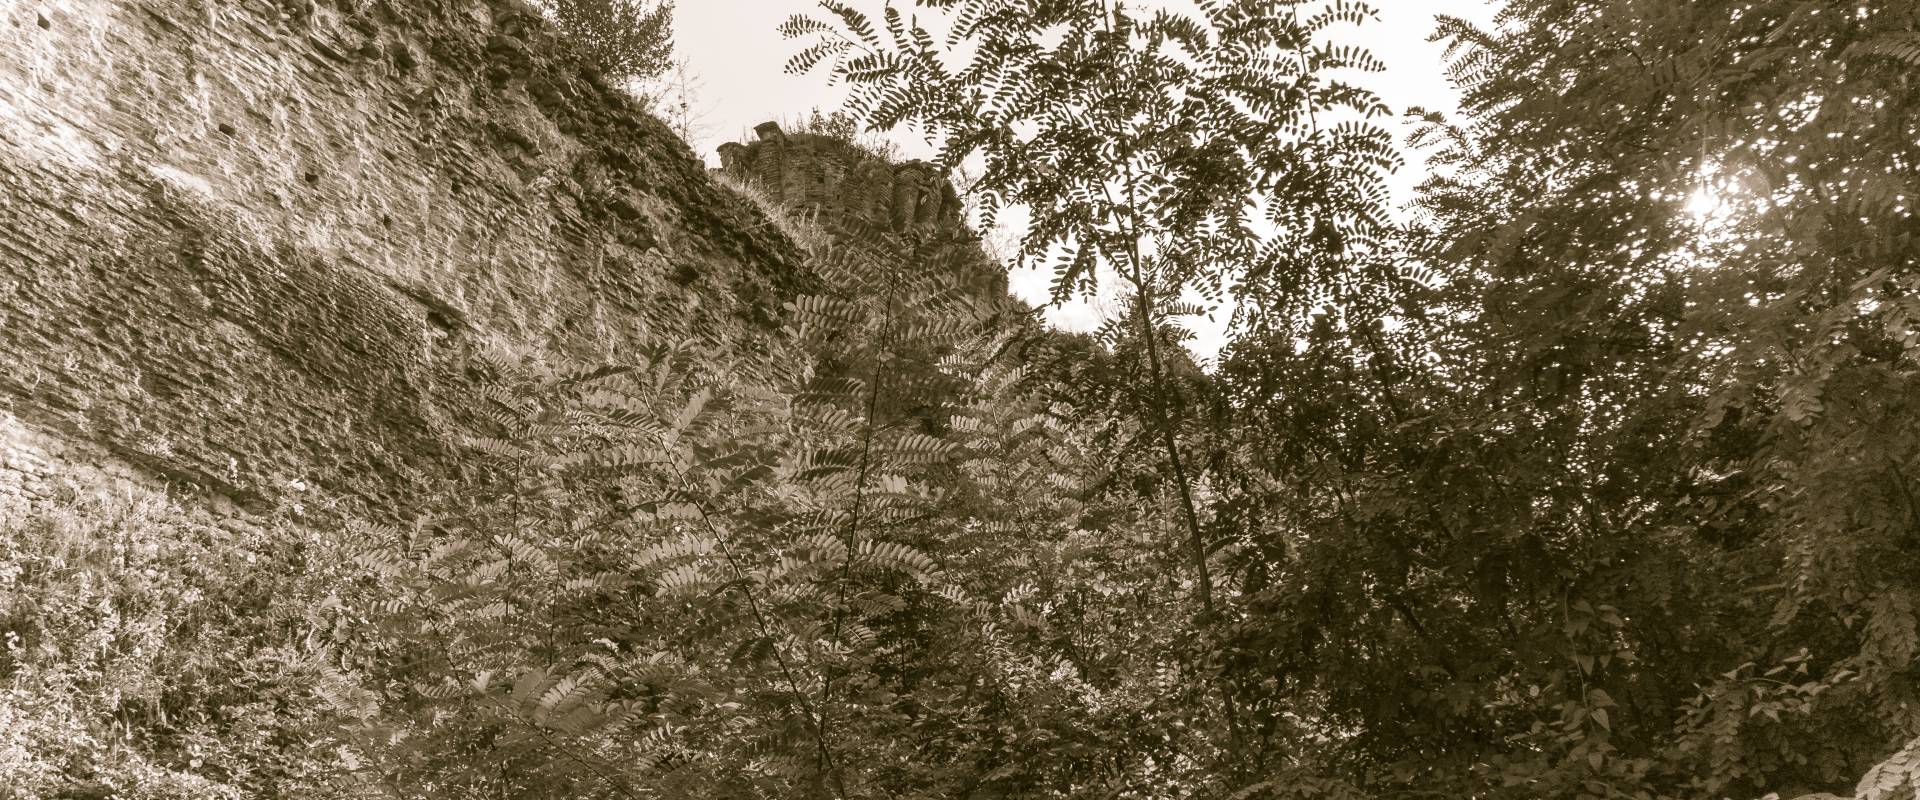 La rocca di Castrocaro da dietro-2 foto di Massimo Saviotti